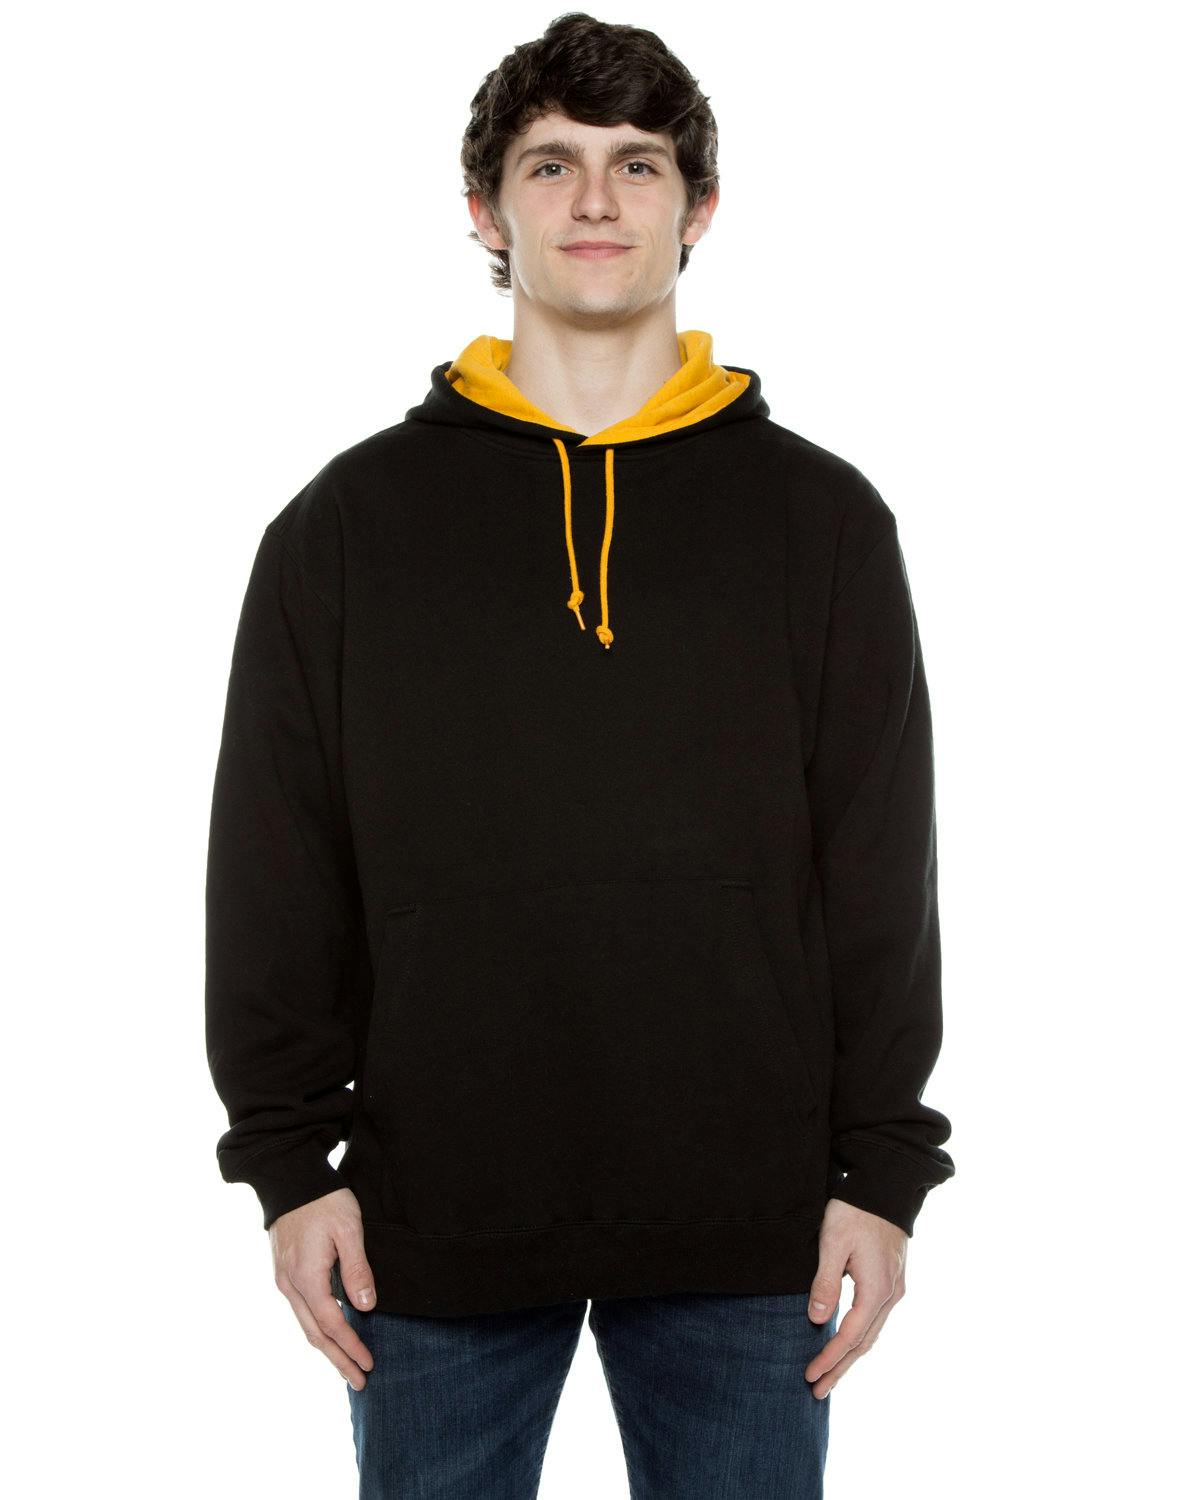 Image for Unisex Contrast Hooded Sweatshirt